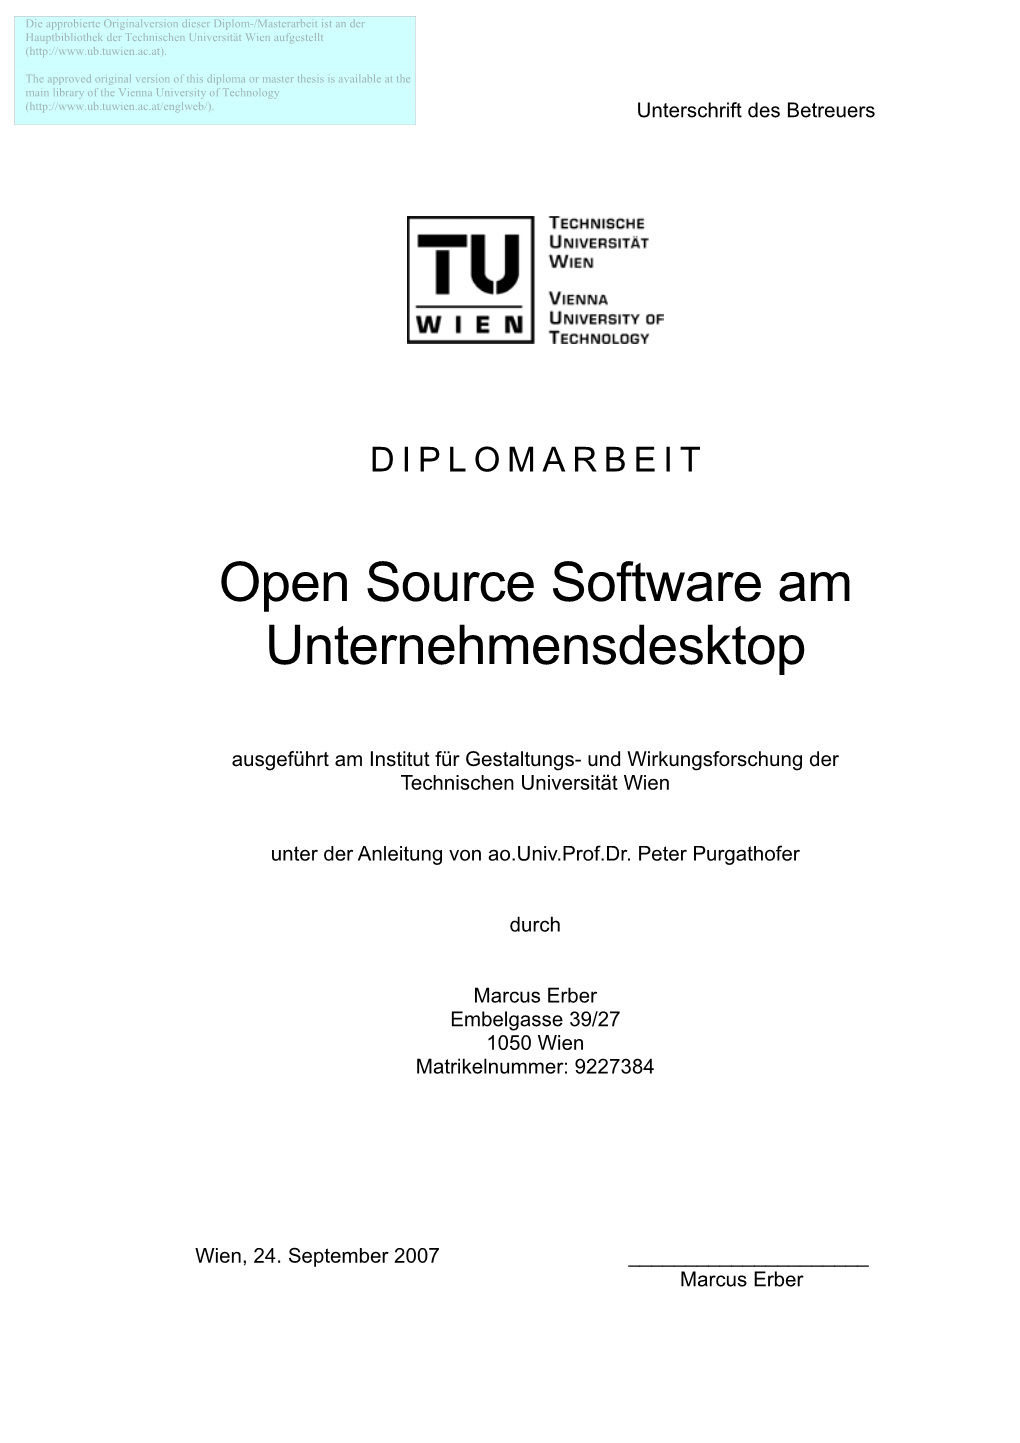 Open Source Software Am Unternehmensdesktop